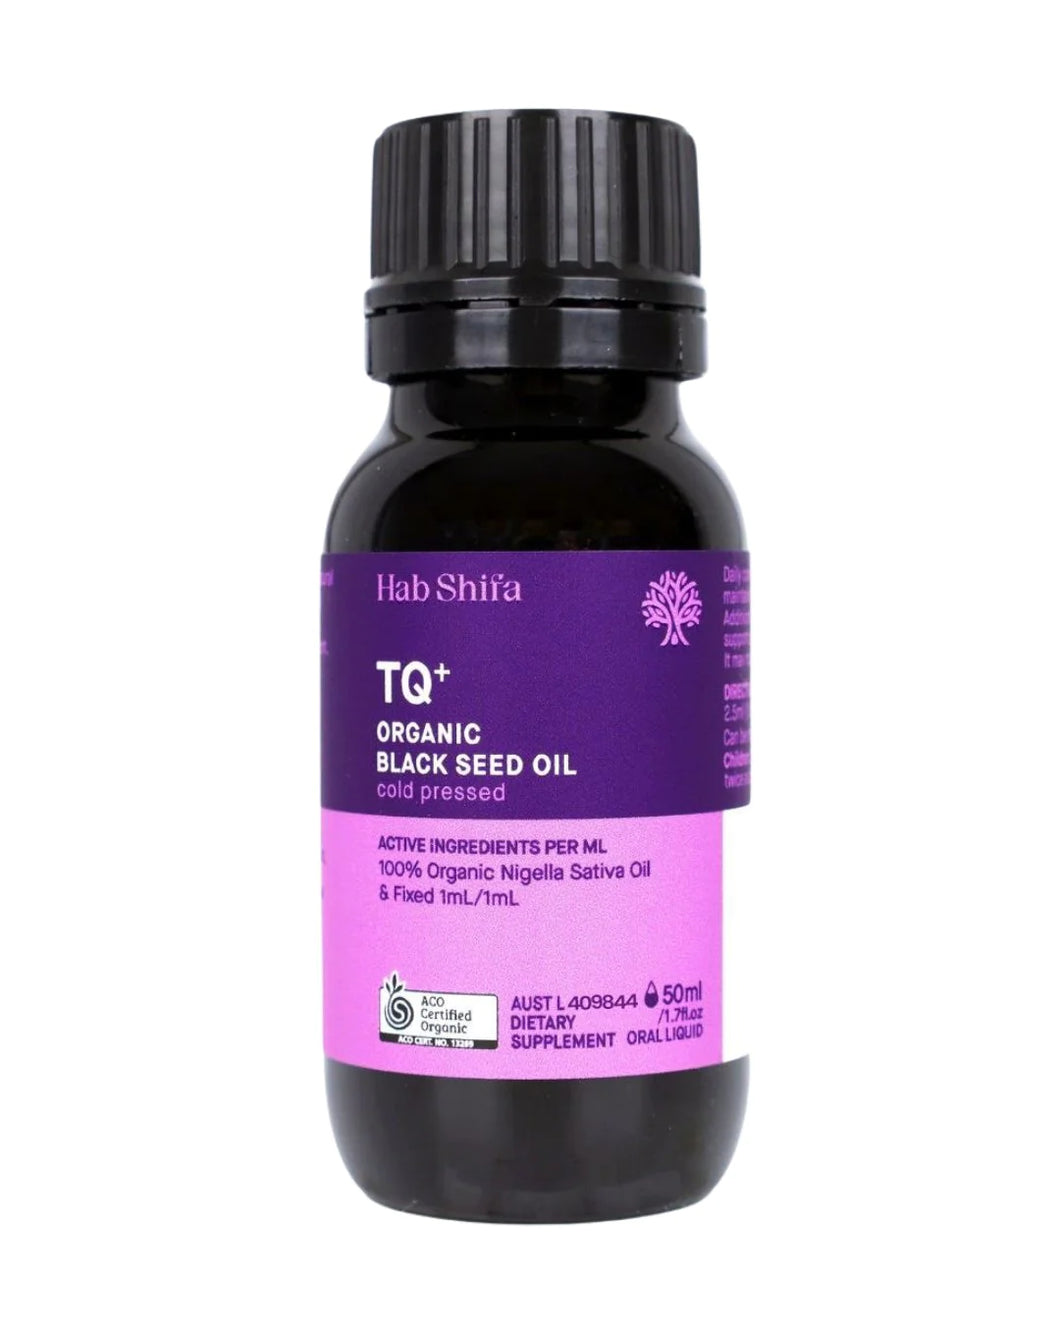 TQ+ Organic Black Seed Oil 50ml